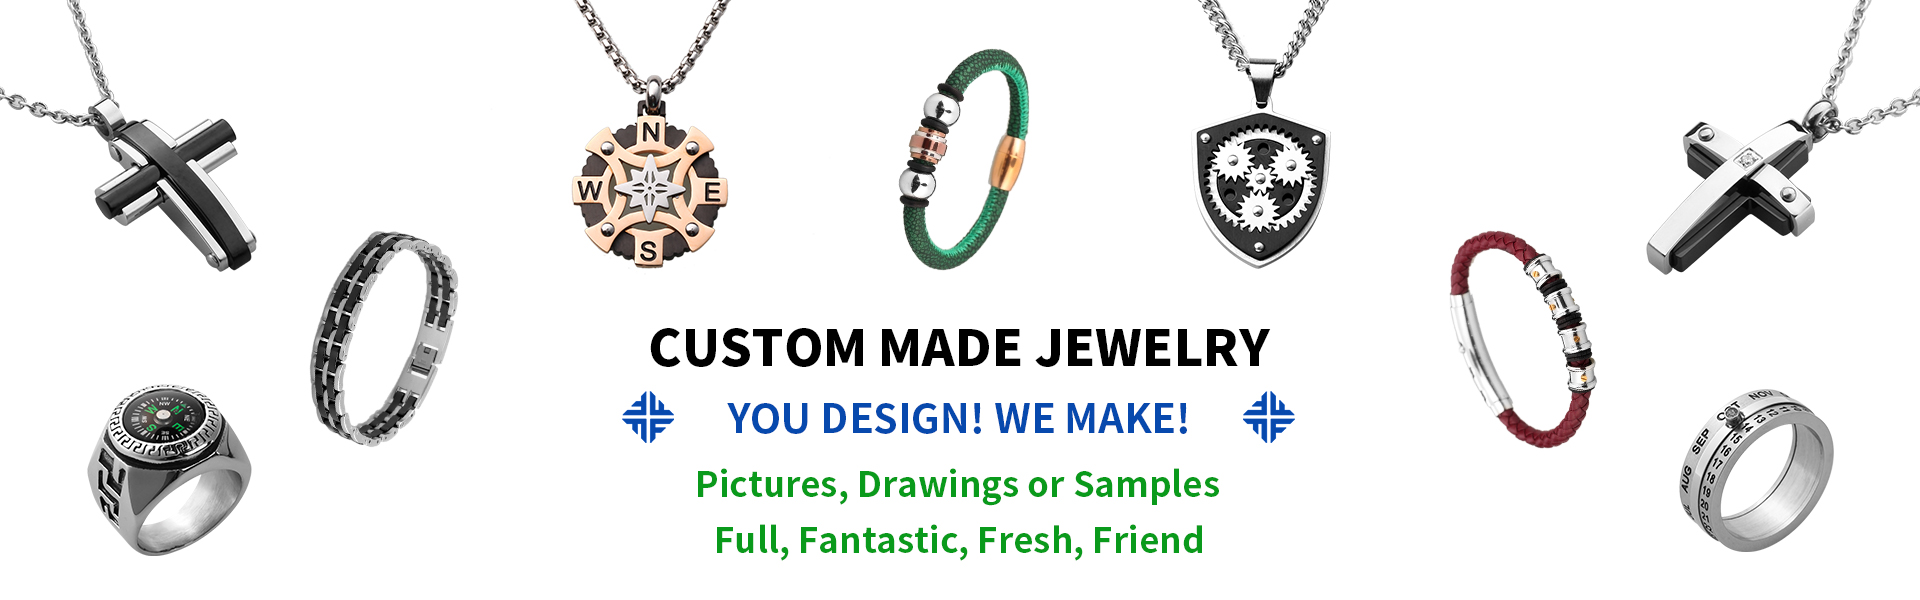 đồ trang sức bằng thép không gỉ, đồ trang sức và phụ kiện thời trang, nhà bán buôn và nhà sản xuất đồ trang sức,Dongguan Fullten Jewelry Co., Ltd